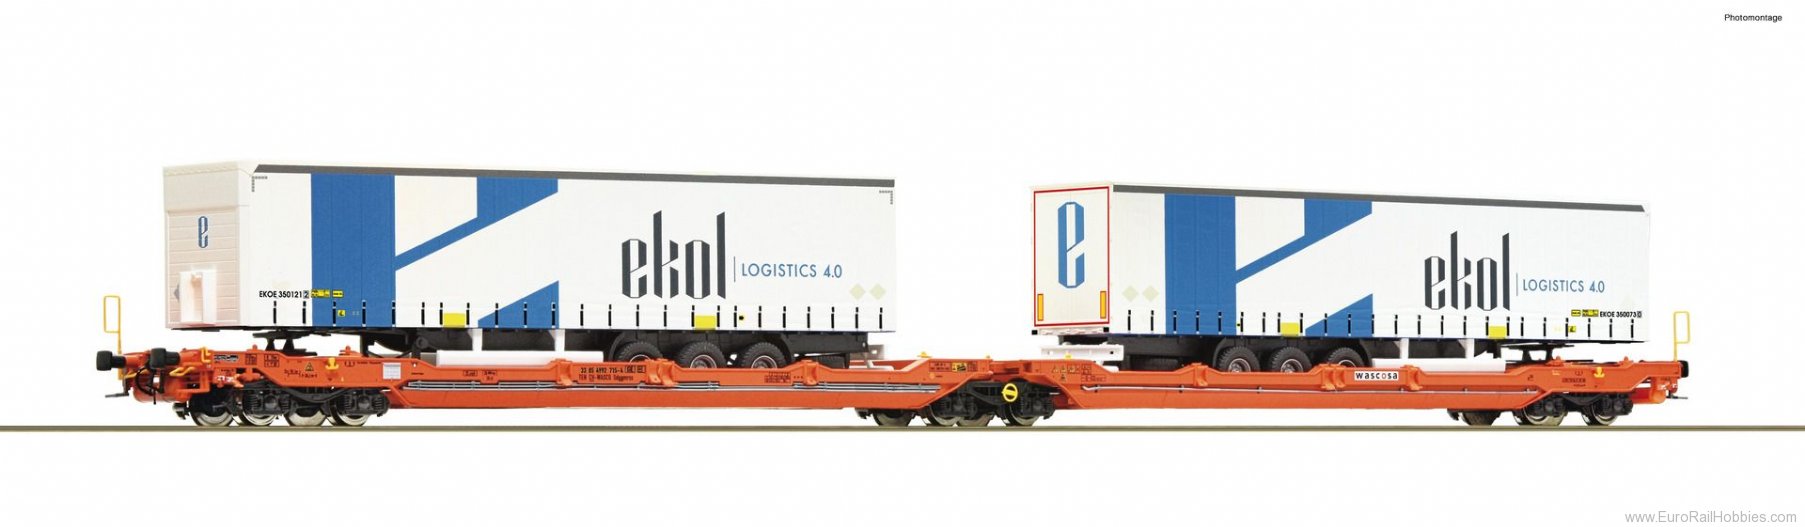 Roco 77392 Articulated double pocket wagon T3000e, Wasco